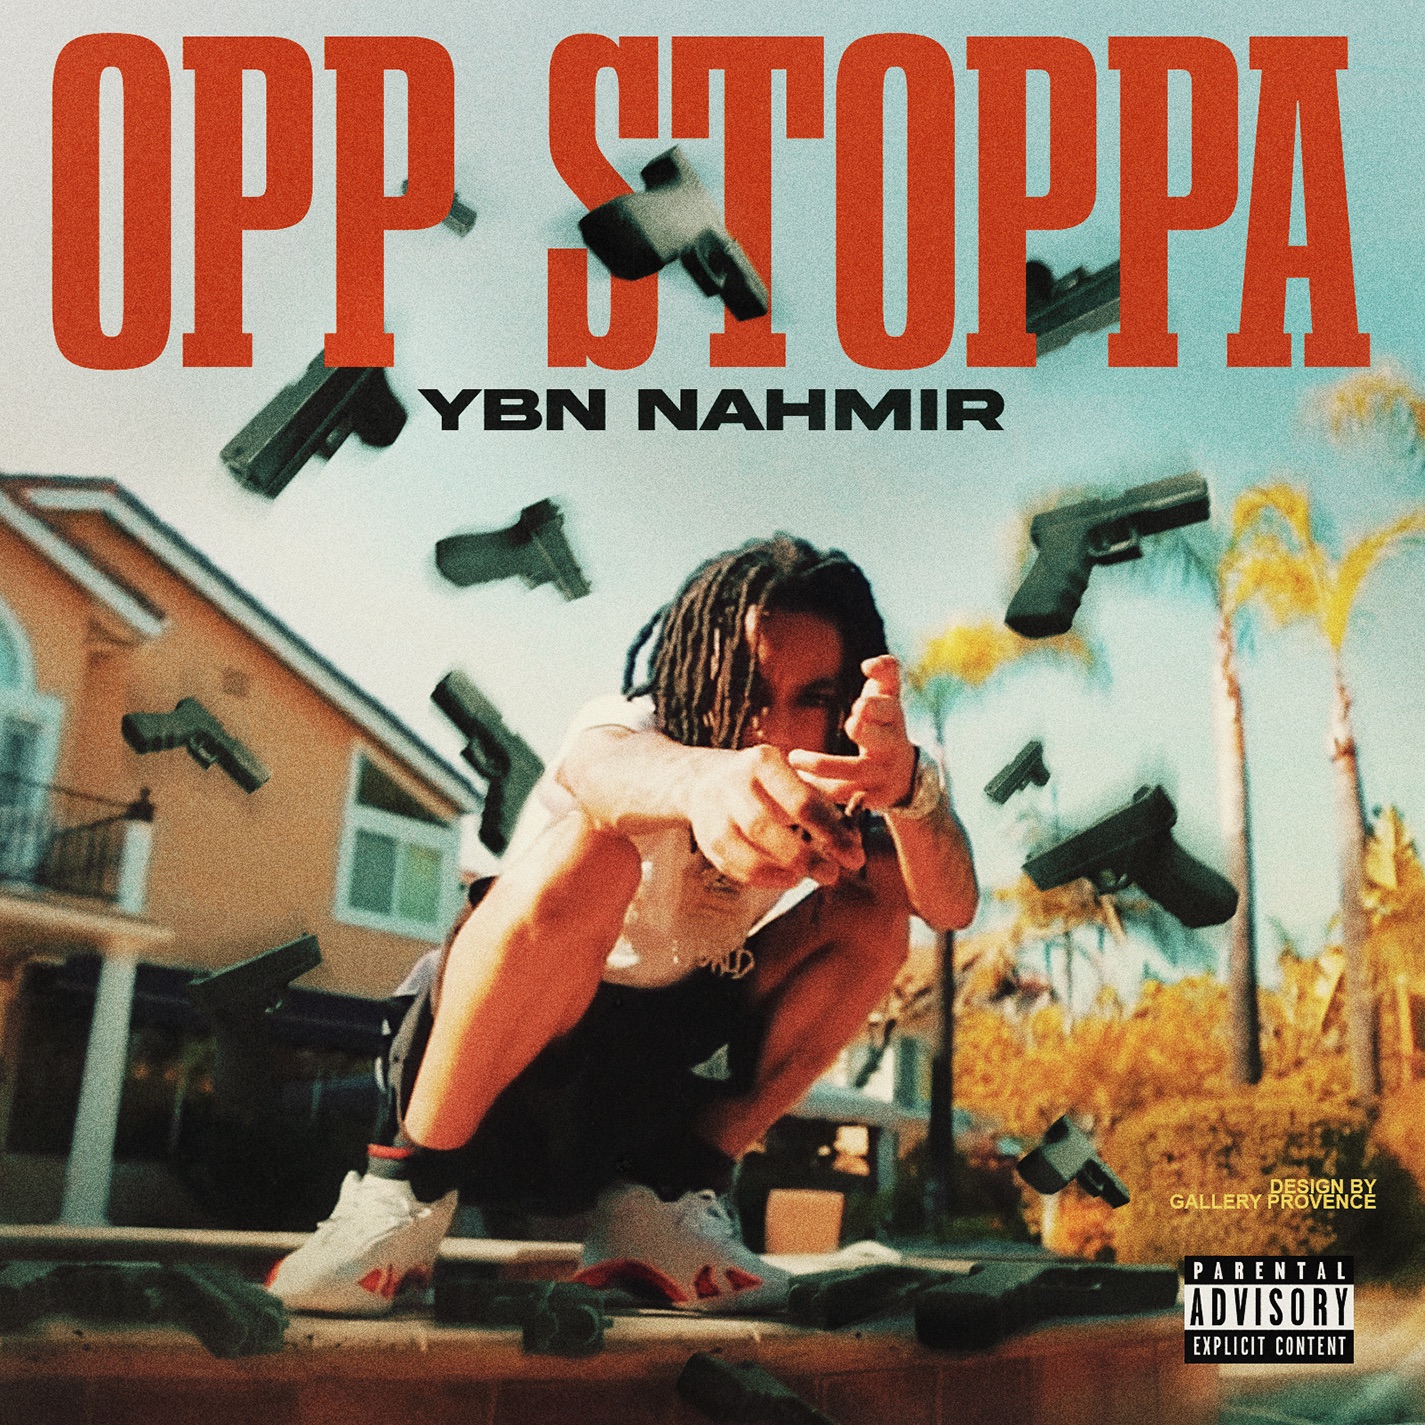 YBN Nahmir - Opp Stoppa - Single